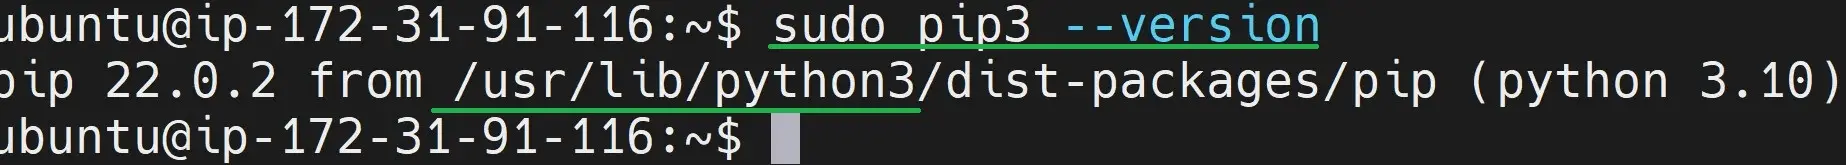 Installing Python pip 3 on Ubuntu 22.04|20.04